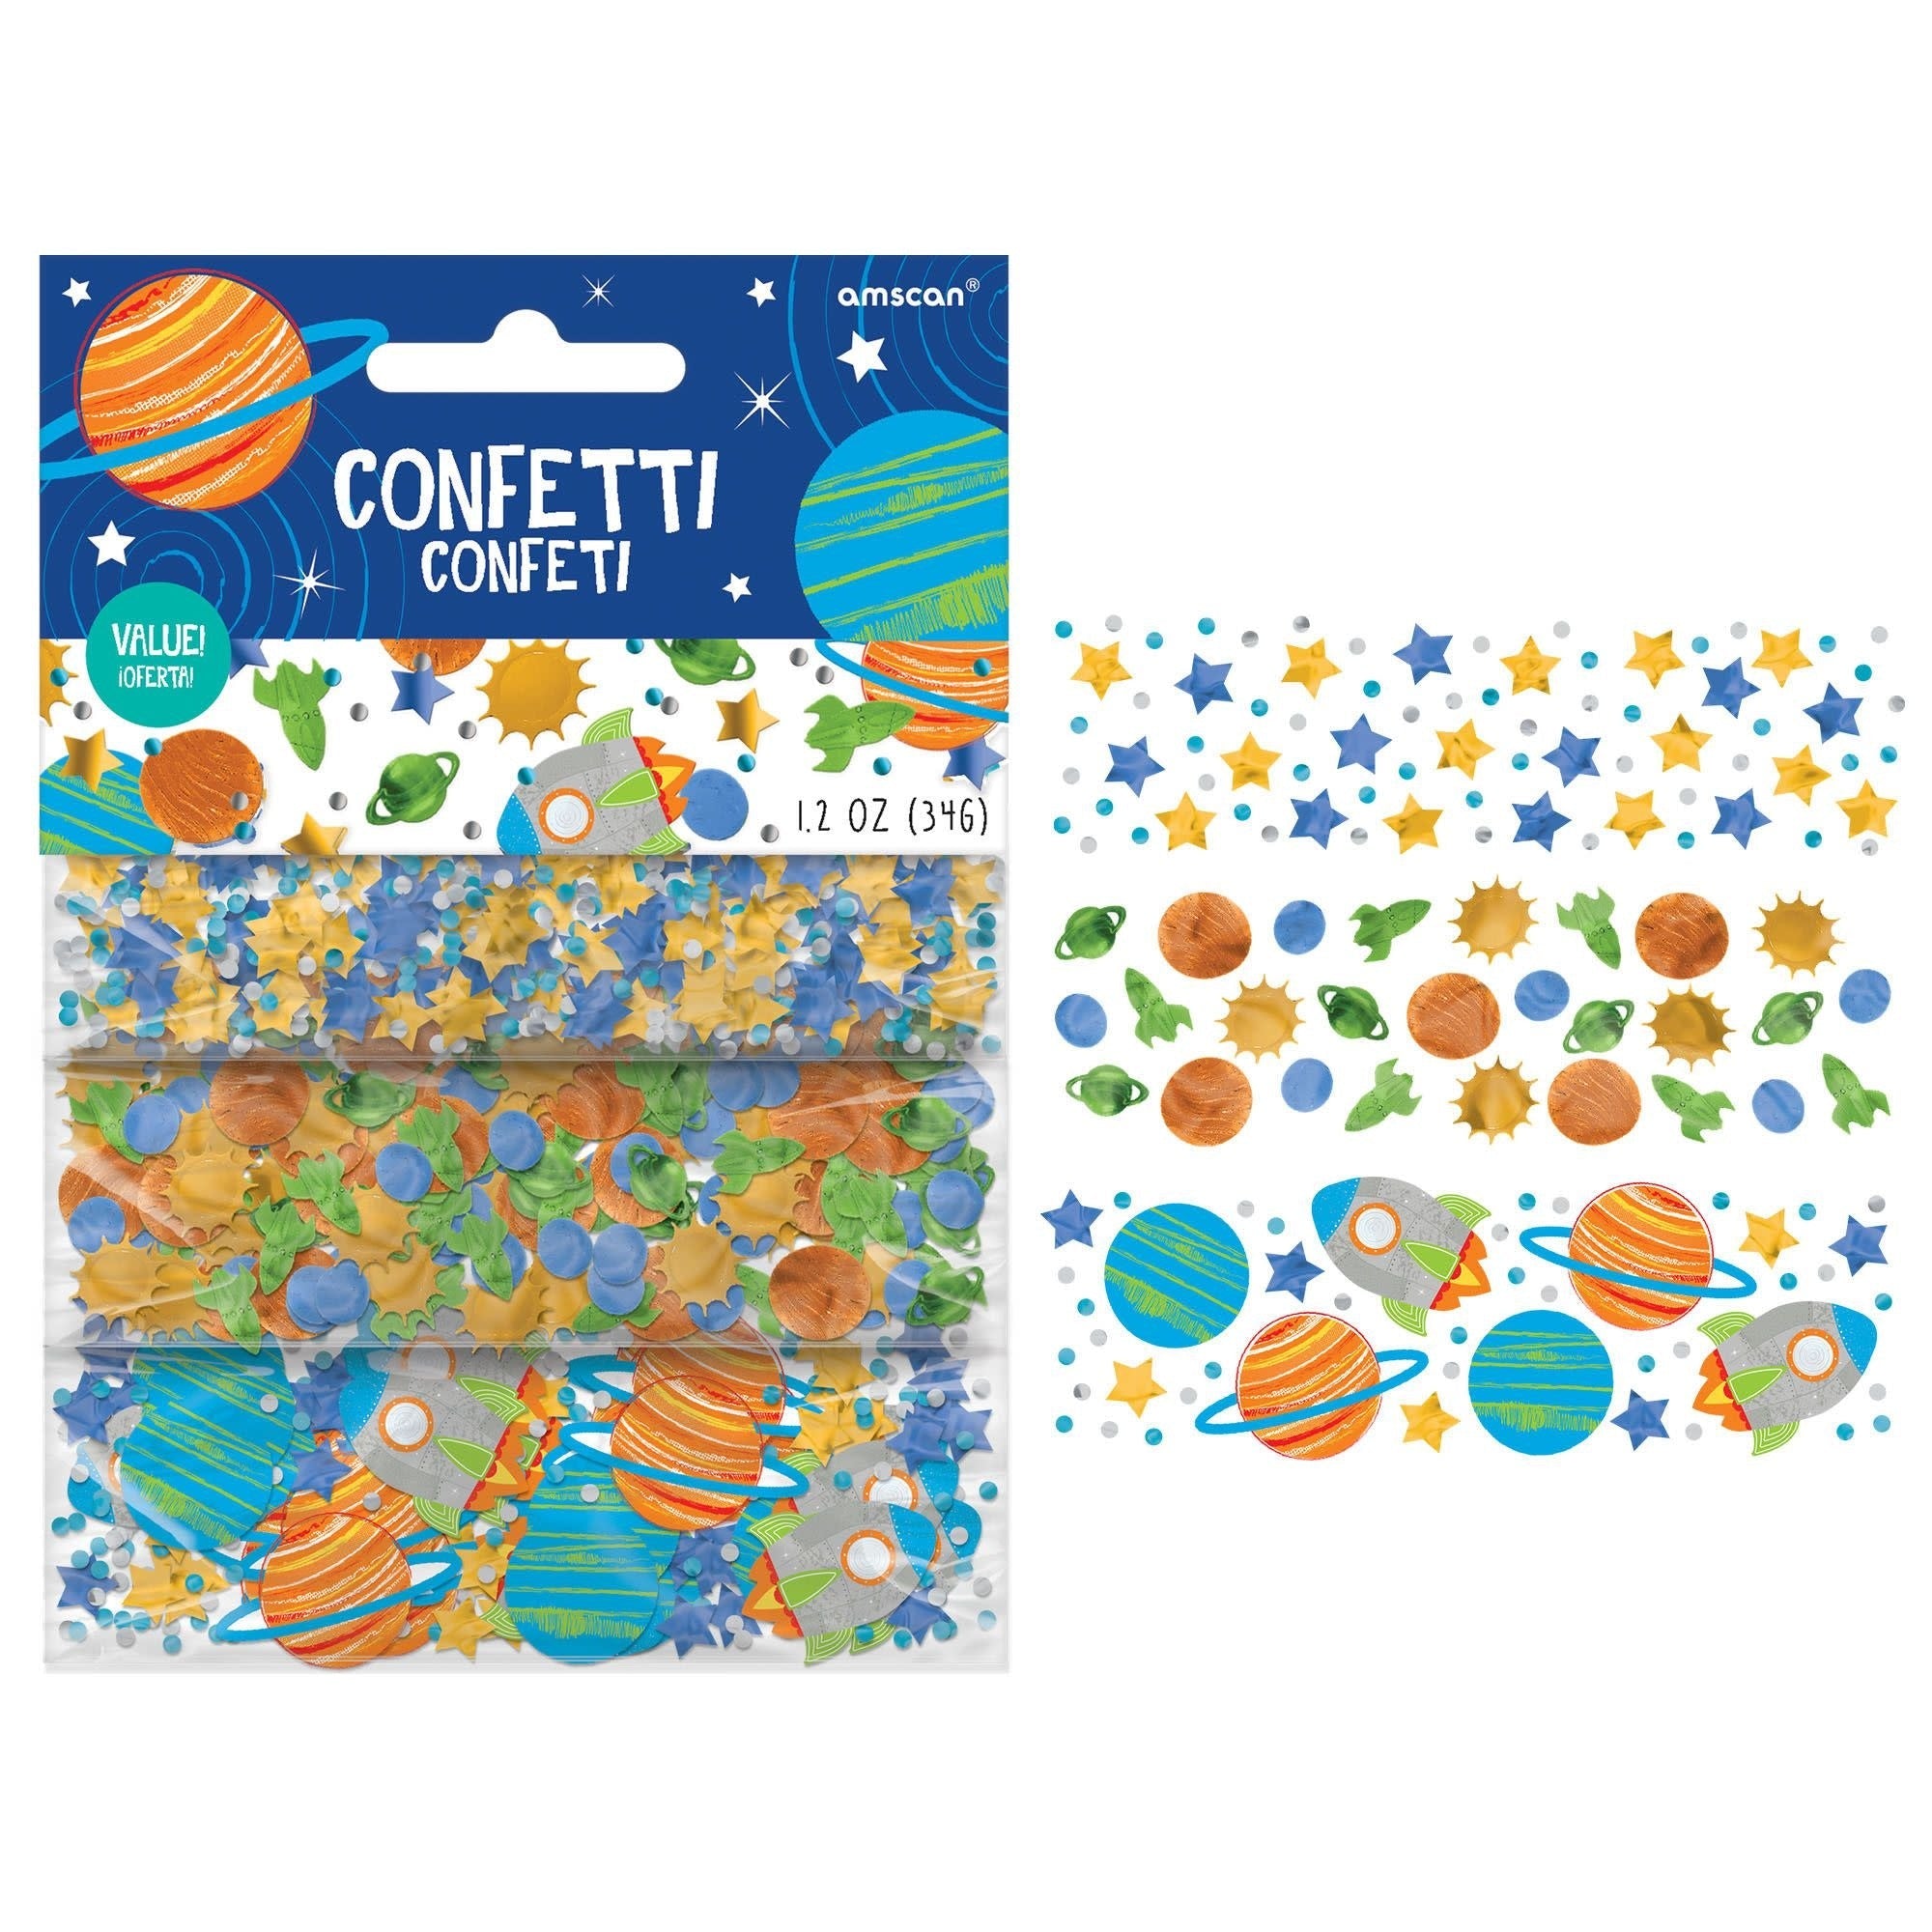 Confettis (1.2Oz) - Espace - Party Shop